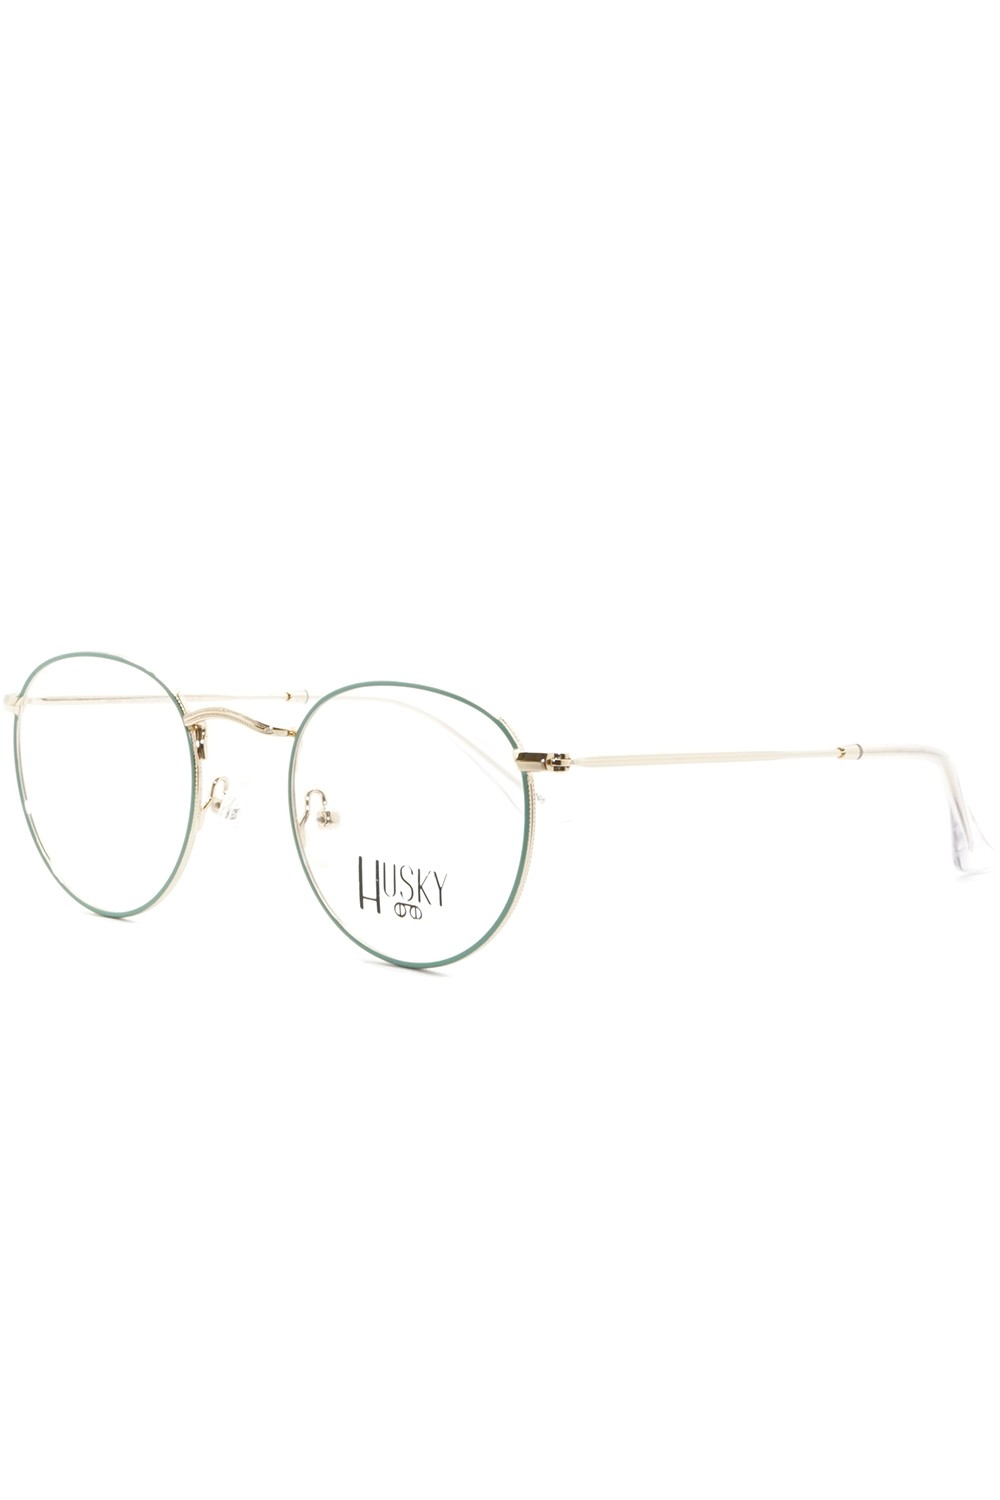 Husky - Occhiali da vista in metallo tondi unisex oro - 1355 6